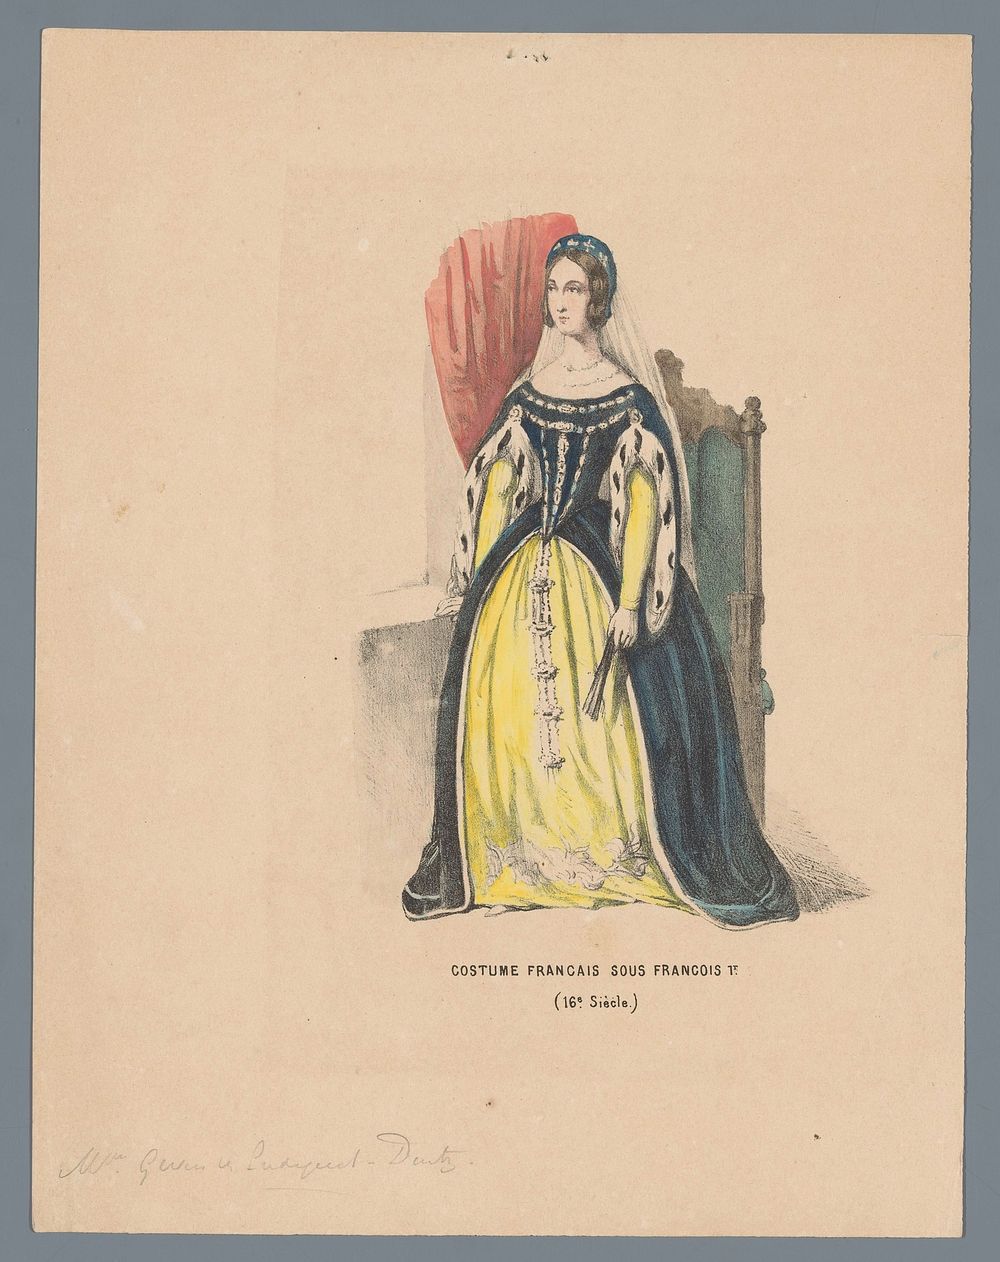 Costume Francais Sous Francois 1e. (16e Siècle) (1840 - 1850) by Elias Spanier